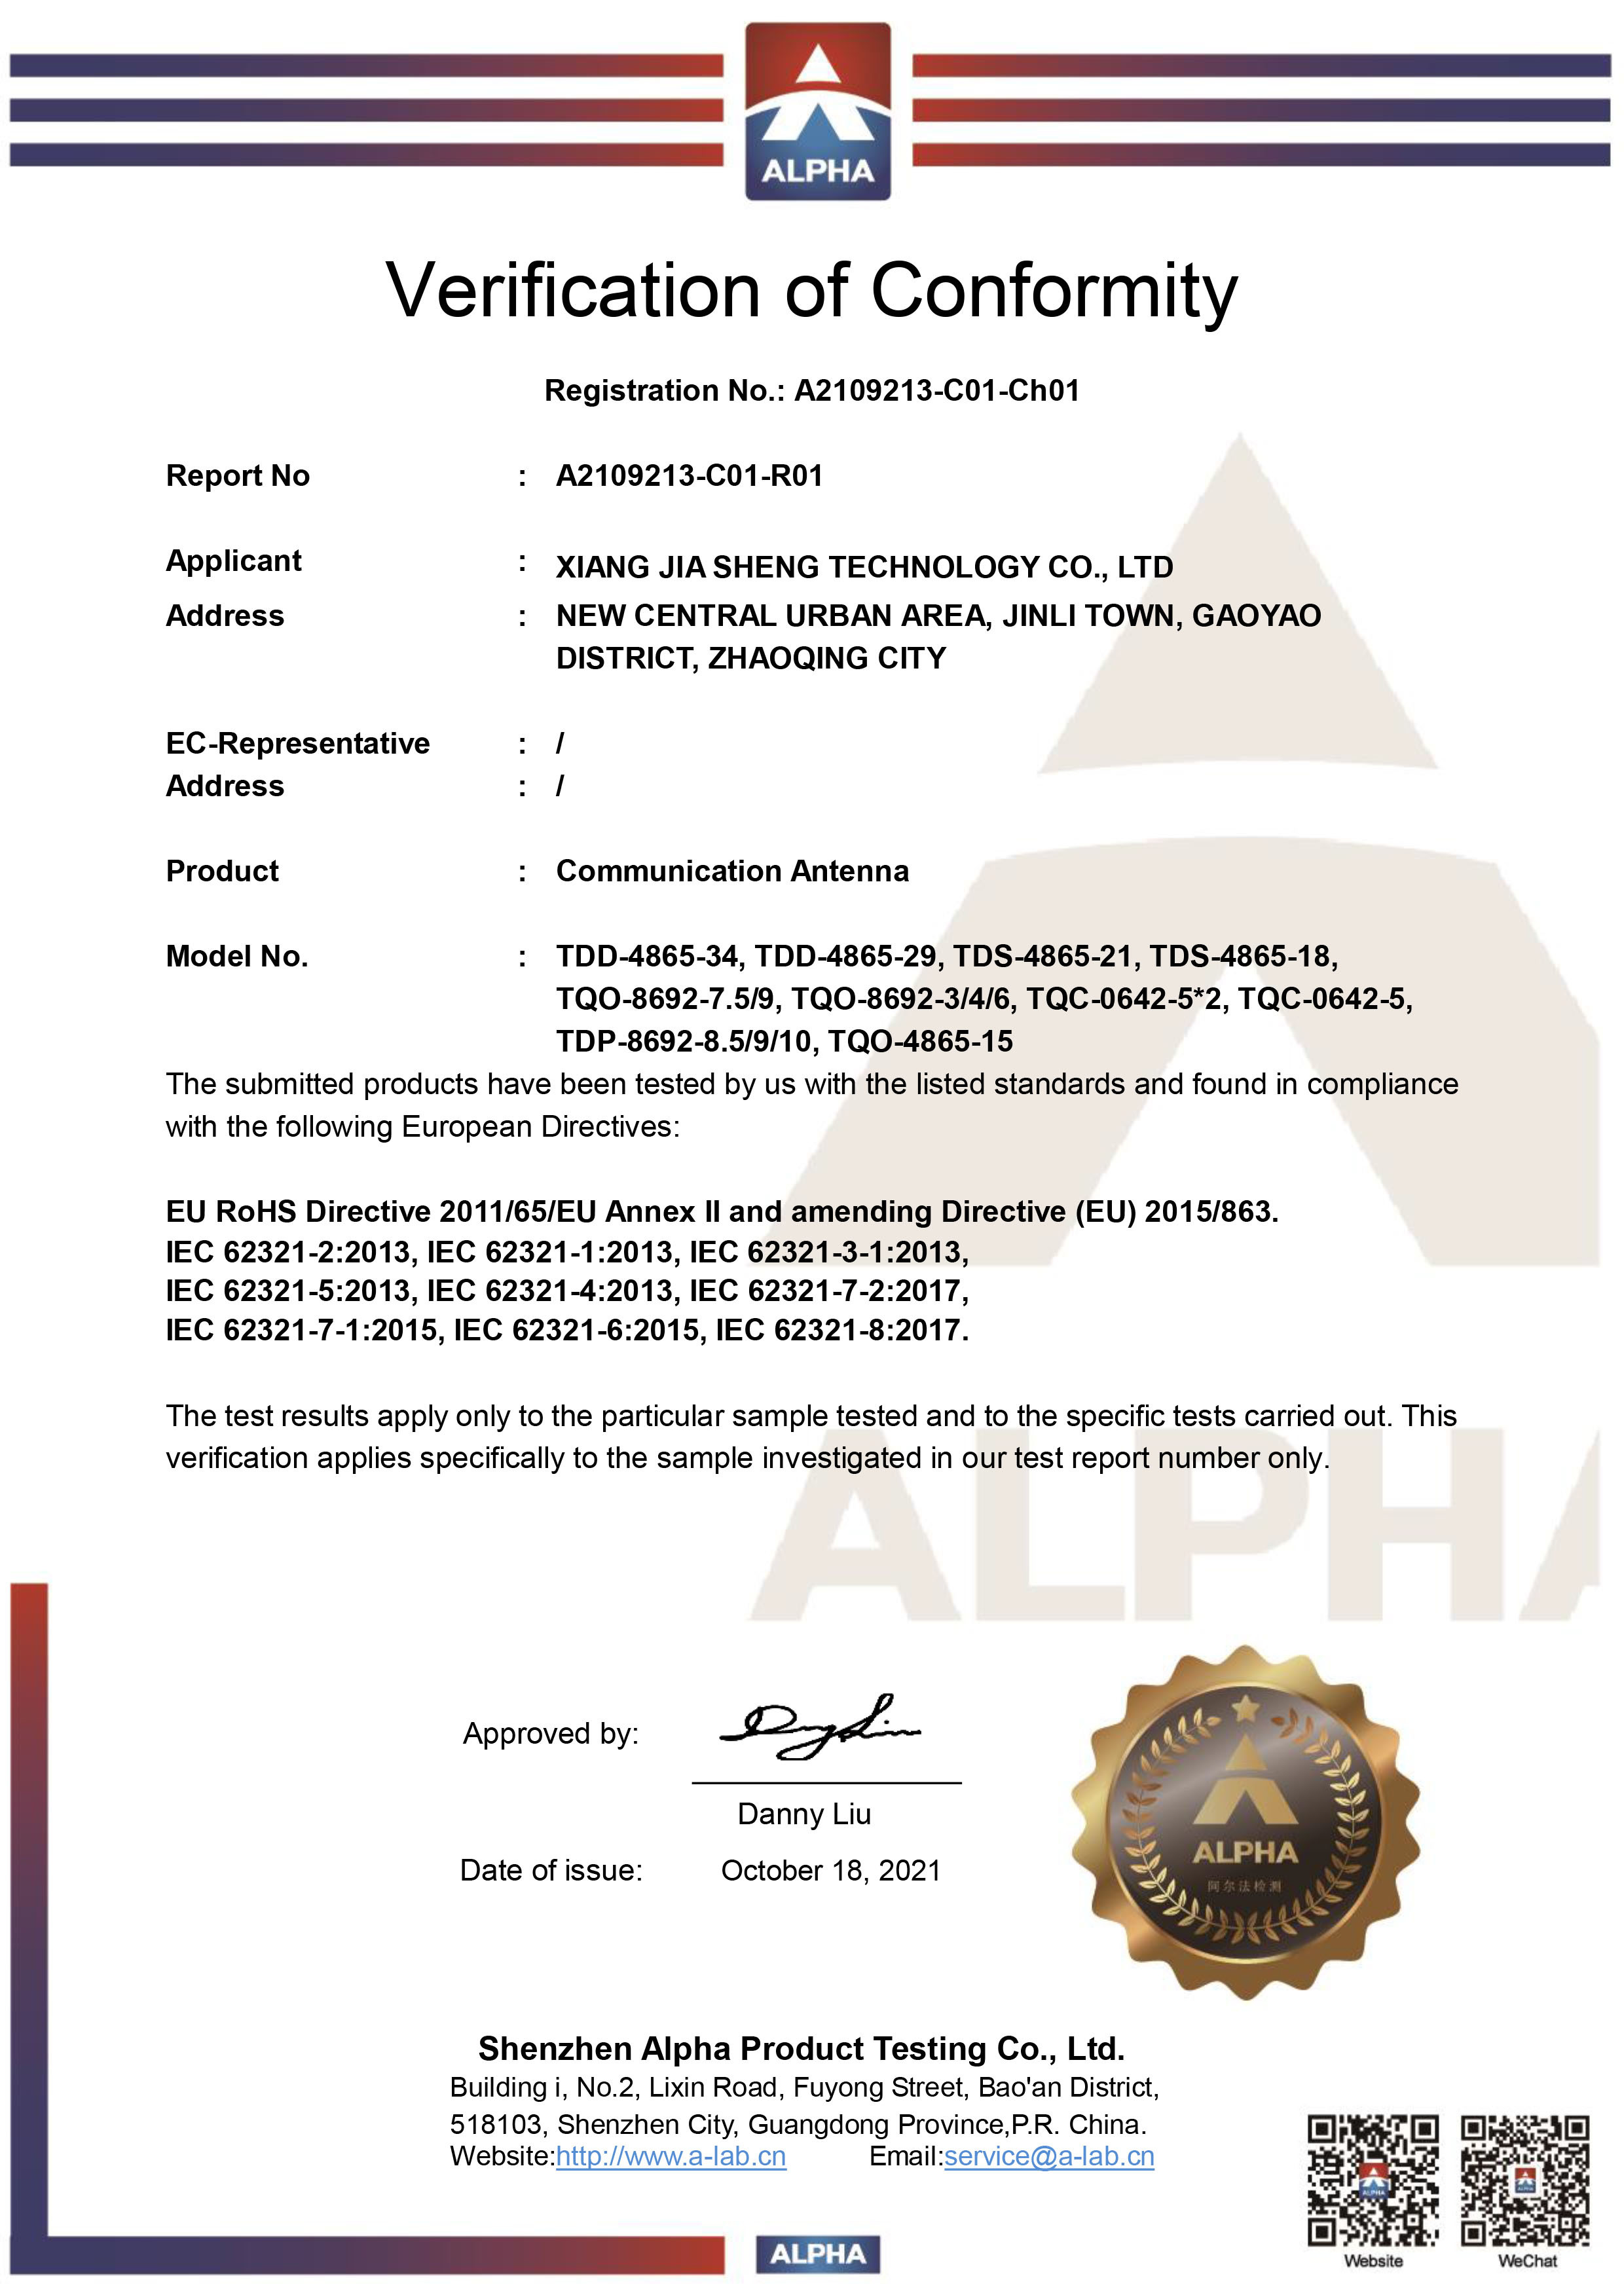 XIANG JIA SHENG Technology Co., Ltd Certifications